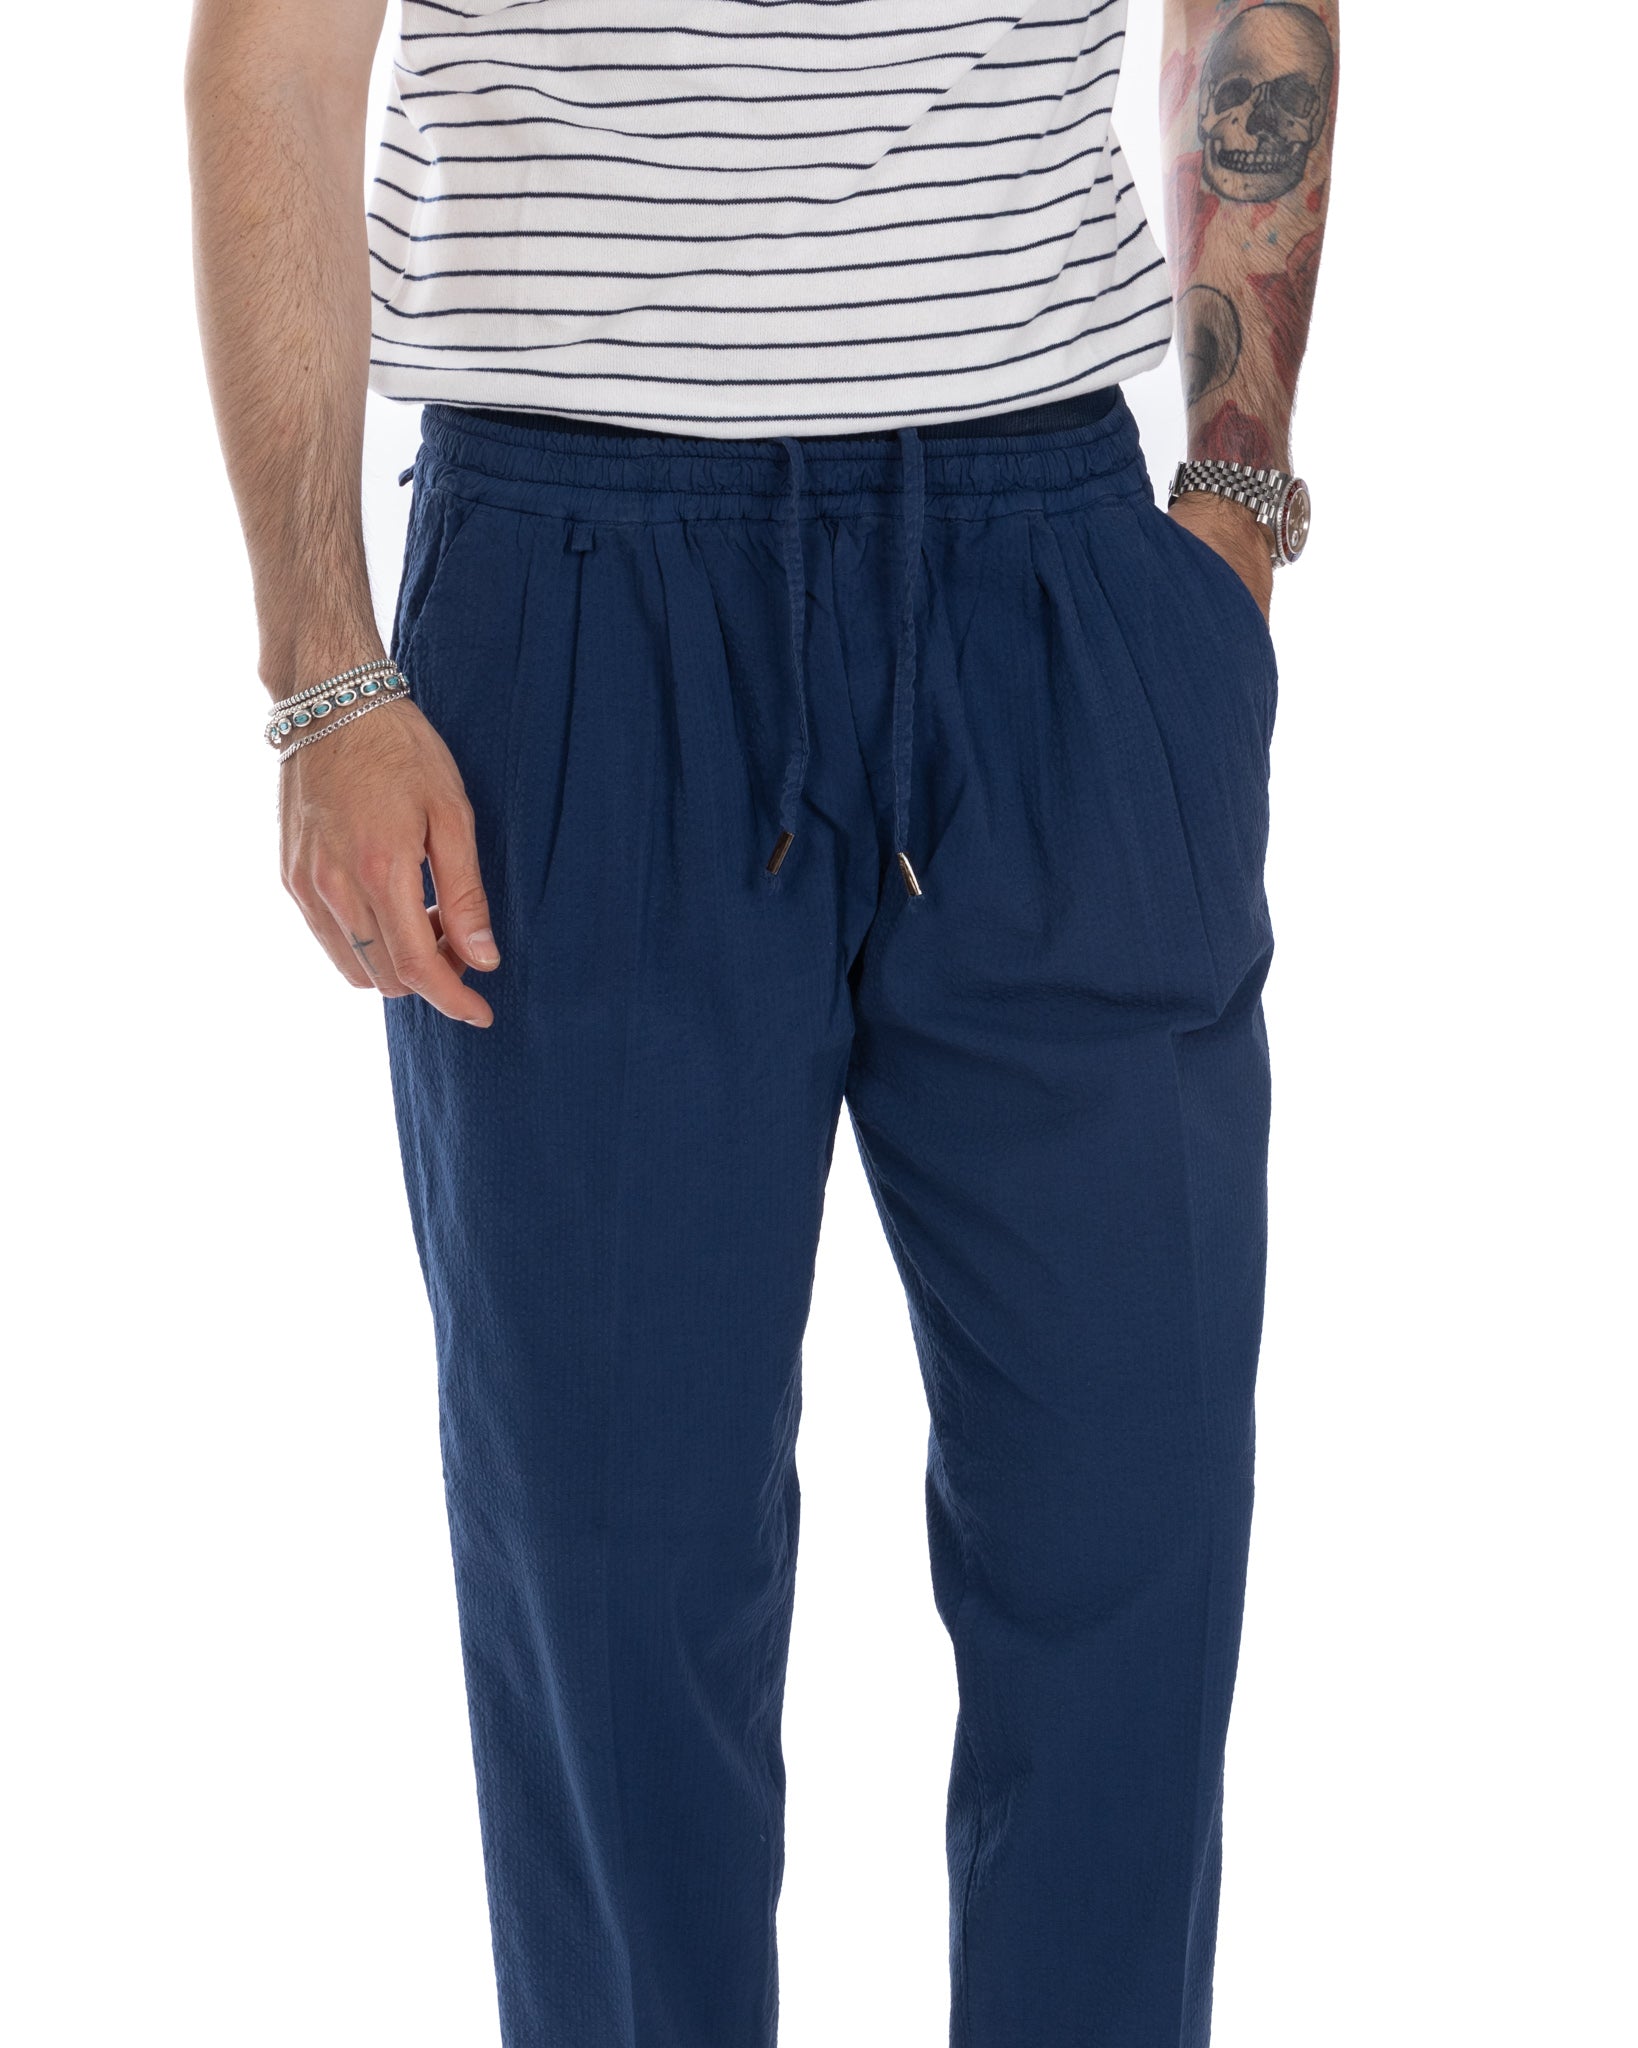 Liam - pantalon gaufré bleu bleuet